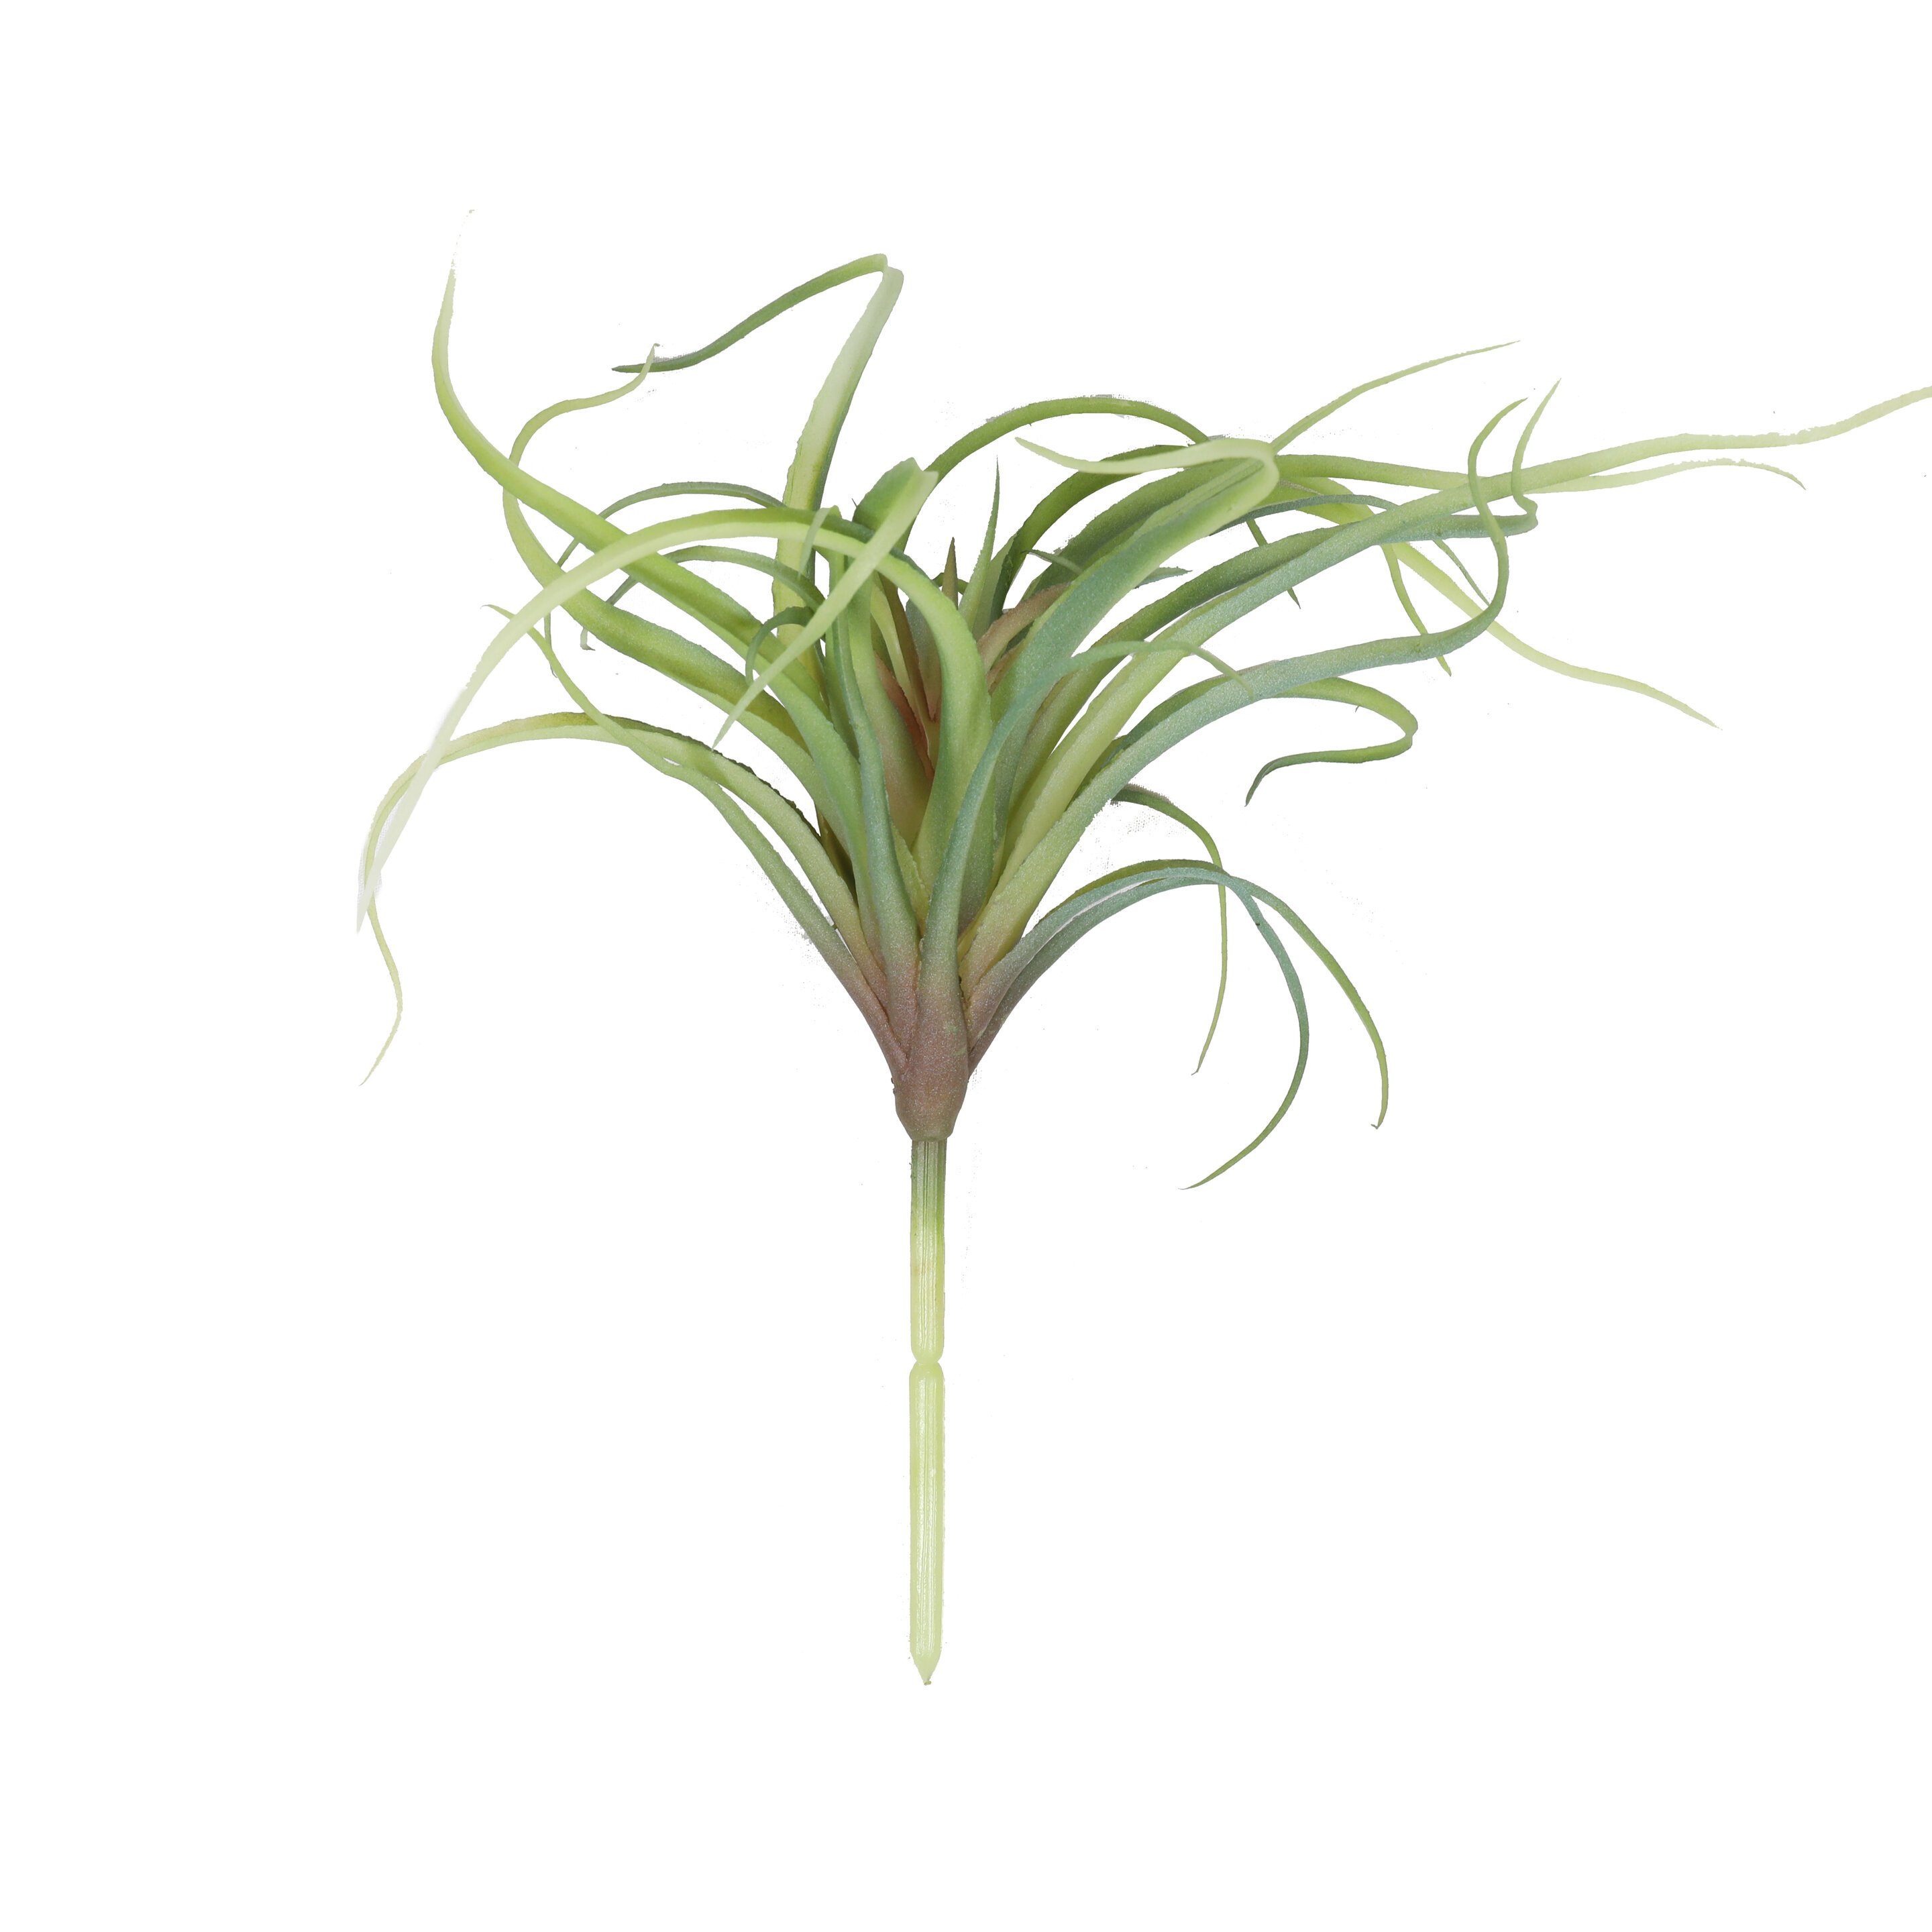 Die künstliche Pflanze Tillandsia cm 15